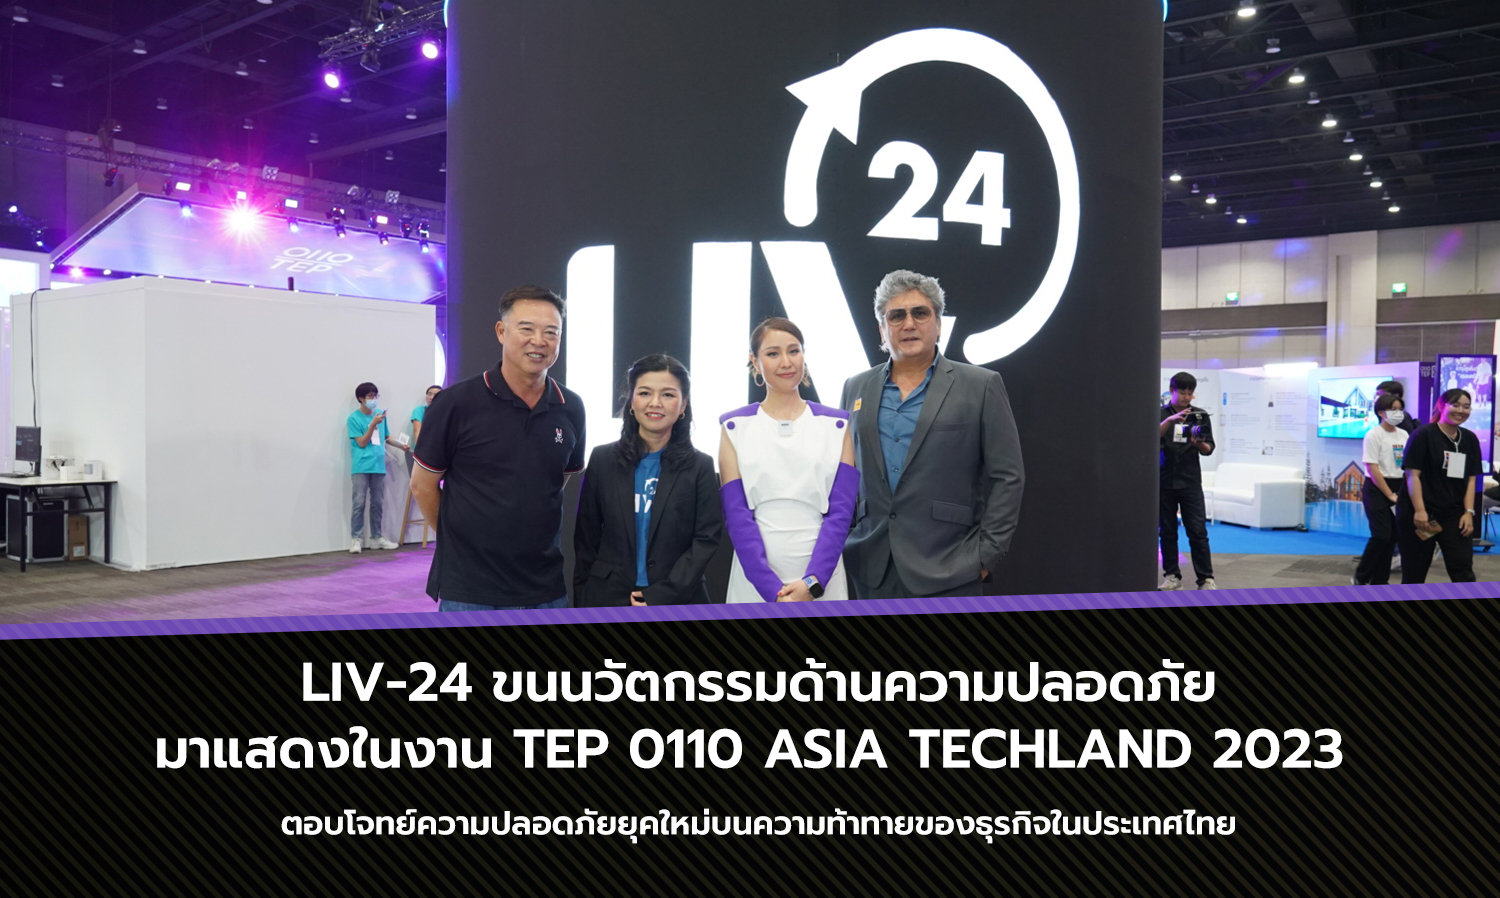 LIV-24 ขนนวัตกรรมด้านความปลอดภัยมาแสดงในงาน TEP 0110 ASIA TECHLAND 2023 ตอบโจทย์ความปลอดภัยยุคใหม่บนความท้าทายของธุรกิจในประเทศไทย